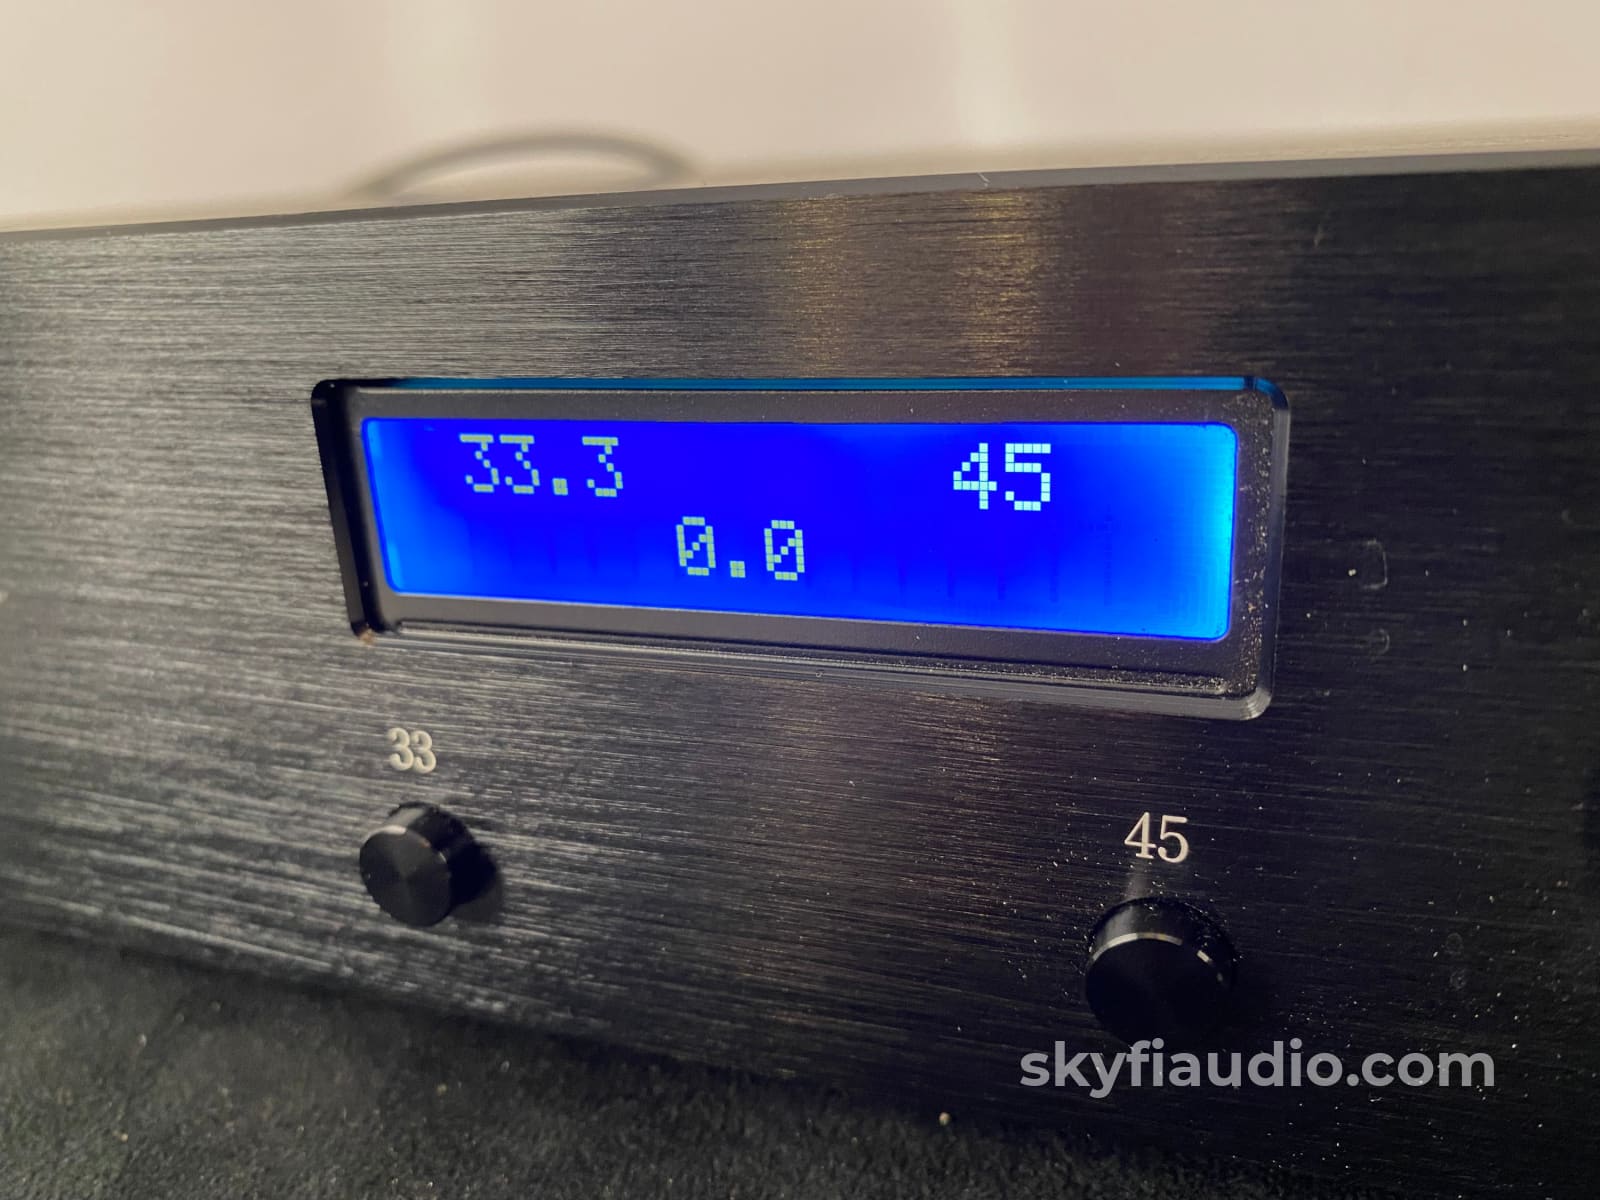 Linn Lp12 Custom Skyfi Build With Sme Tonearm And New Sumiko Songbird Turntable